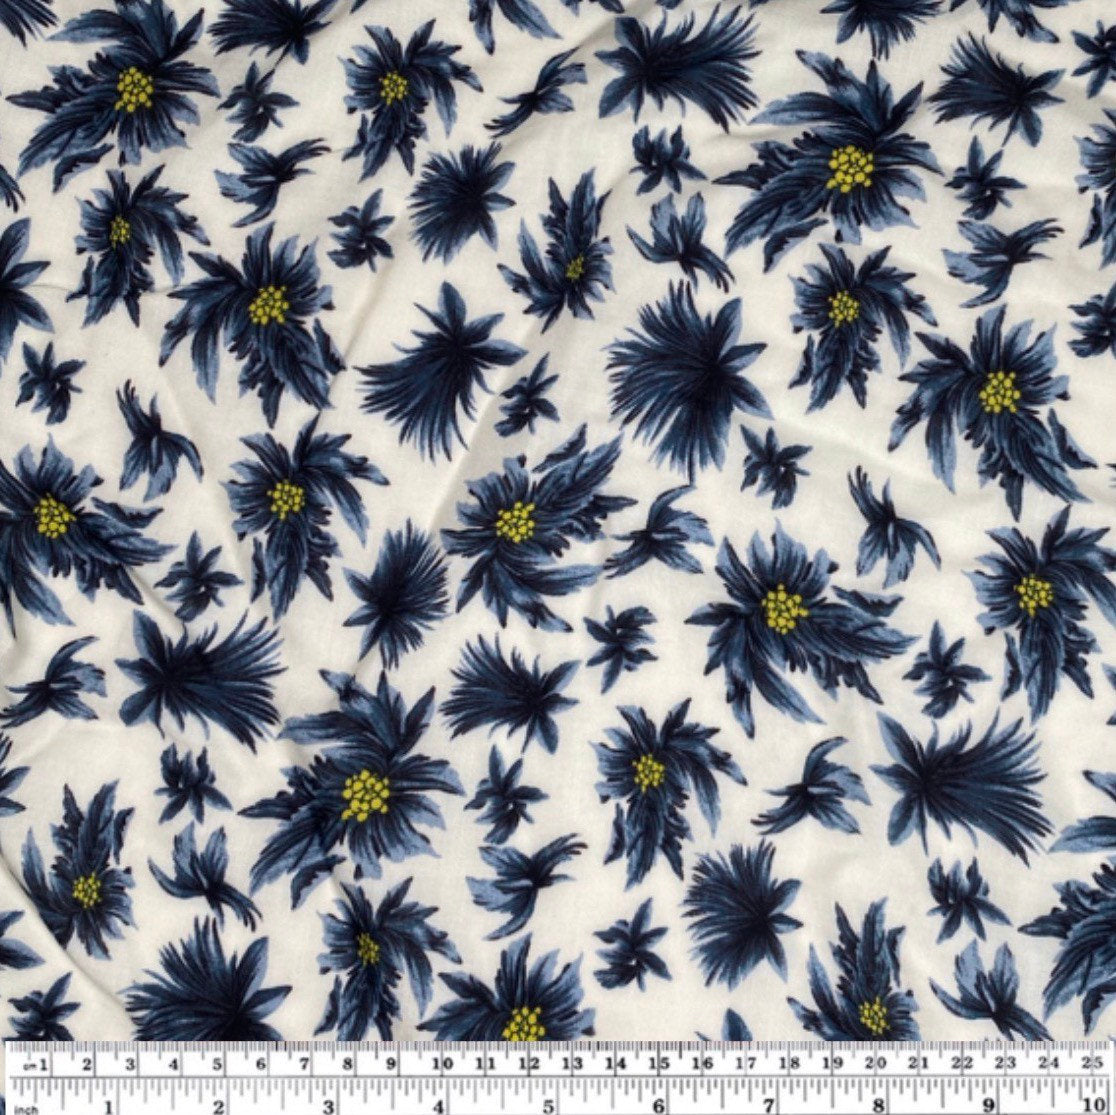 Floral Rayon Batiste - 58” - White/Blue/Yellow